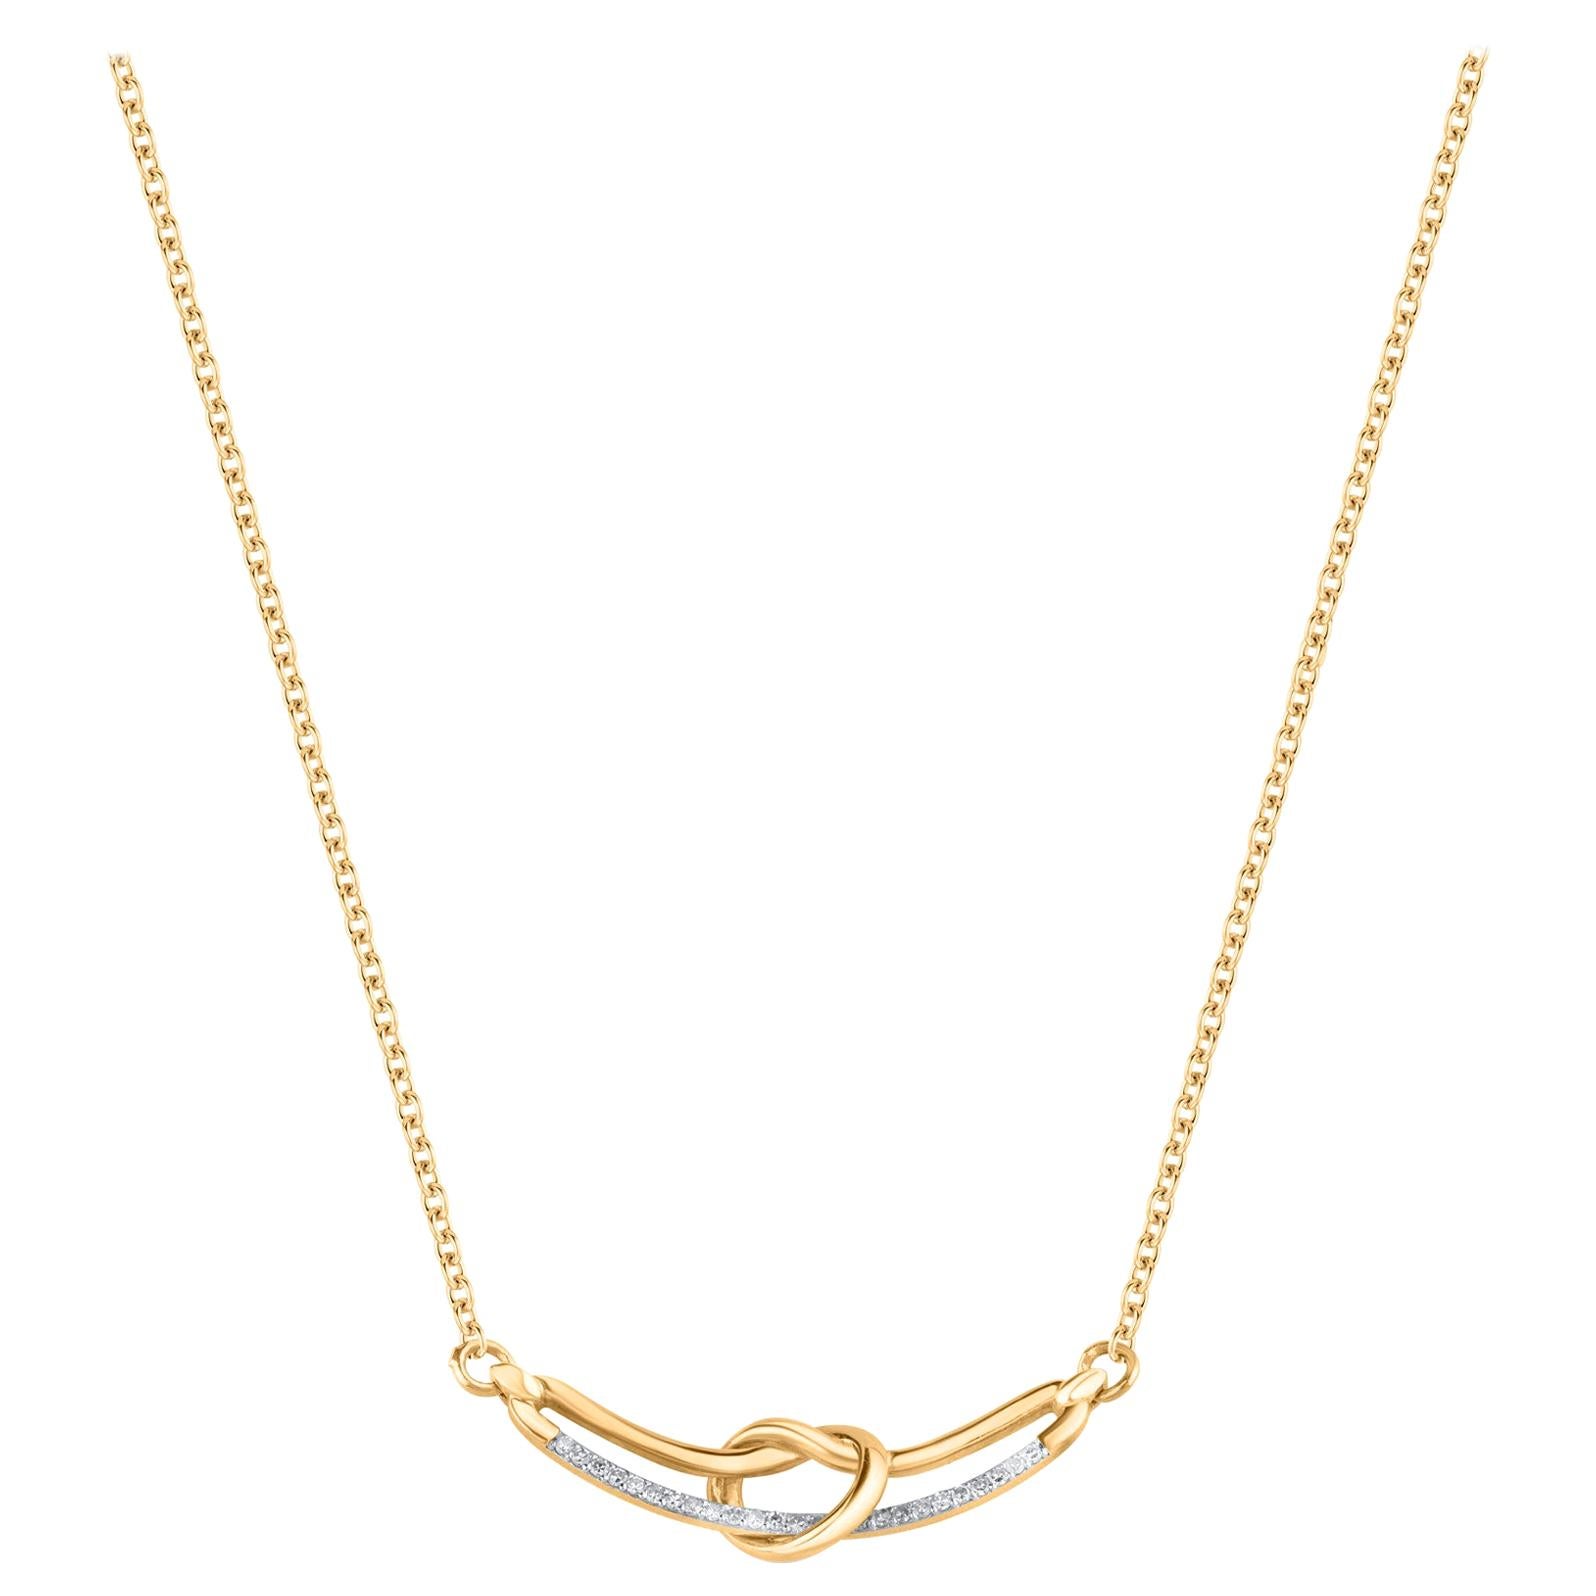 TJD Collier nœud d'amour en or jaune 18 carats avec chaîne de 18 pouces et diamants 0,15 carat